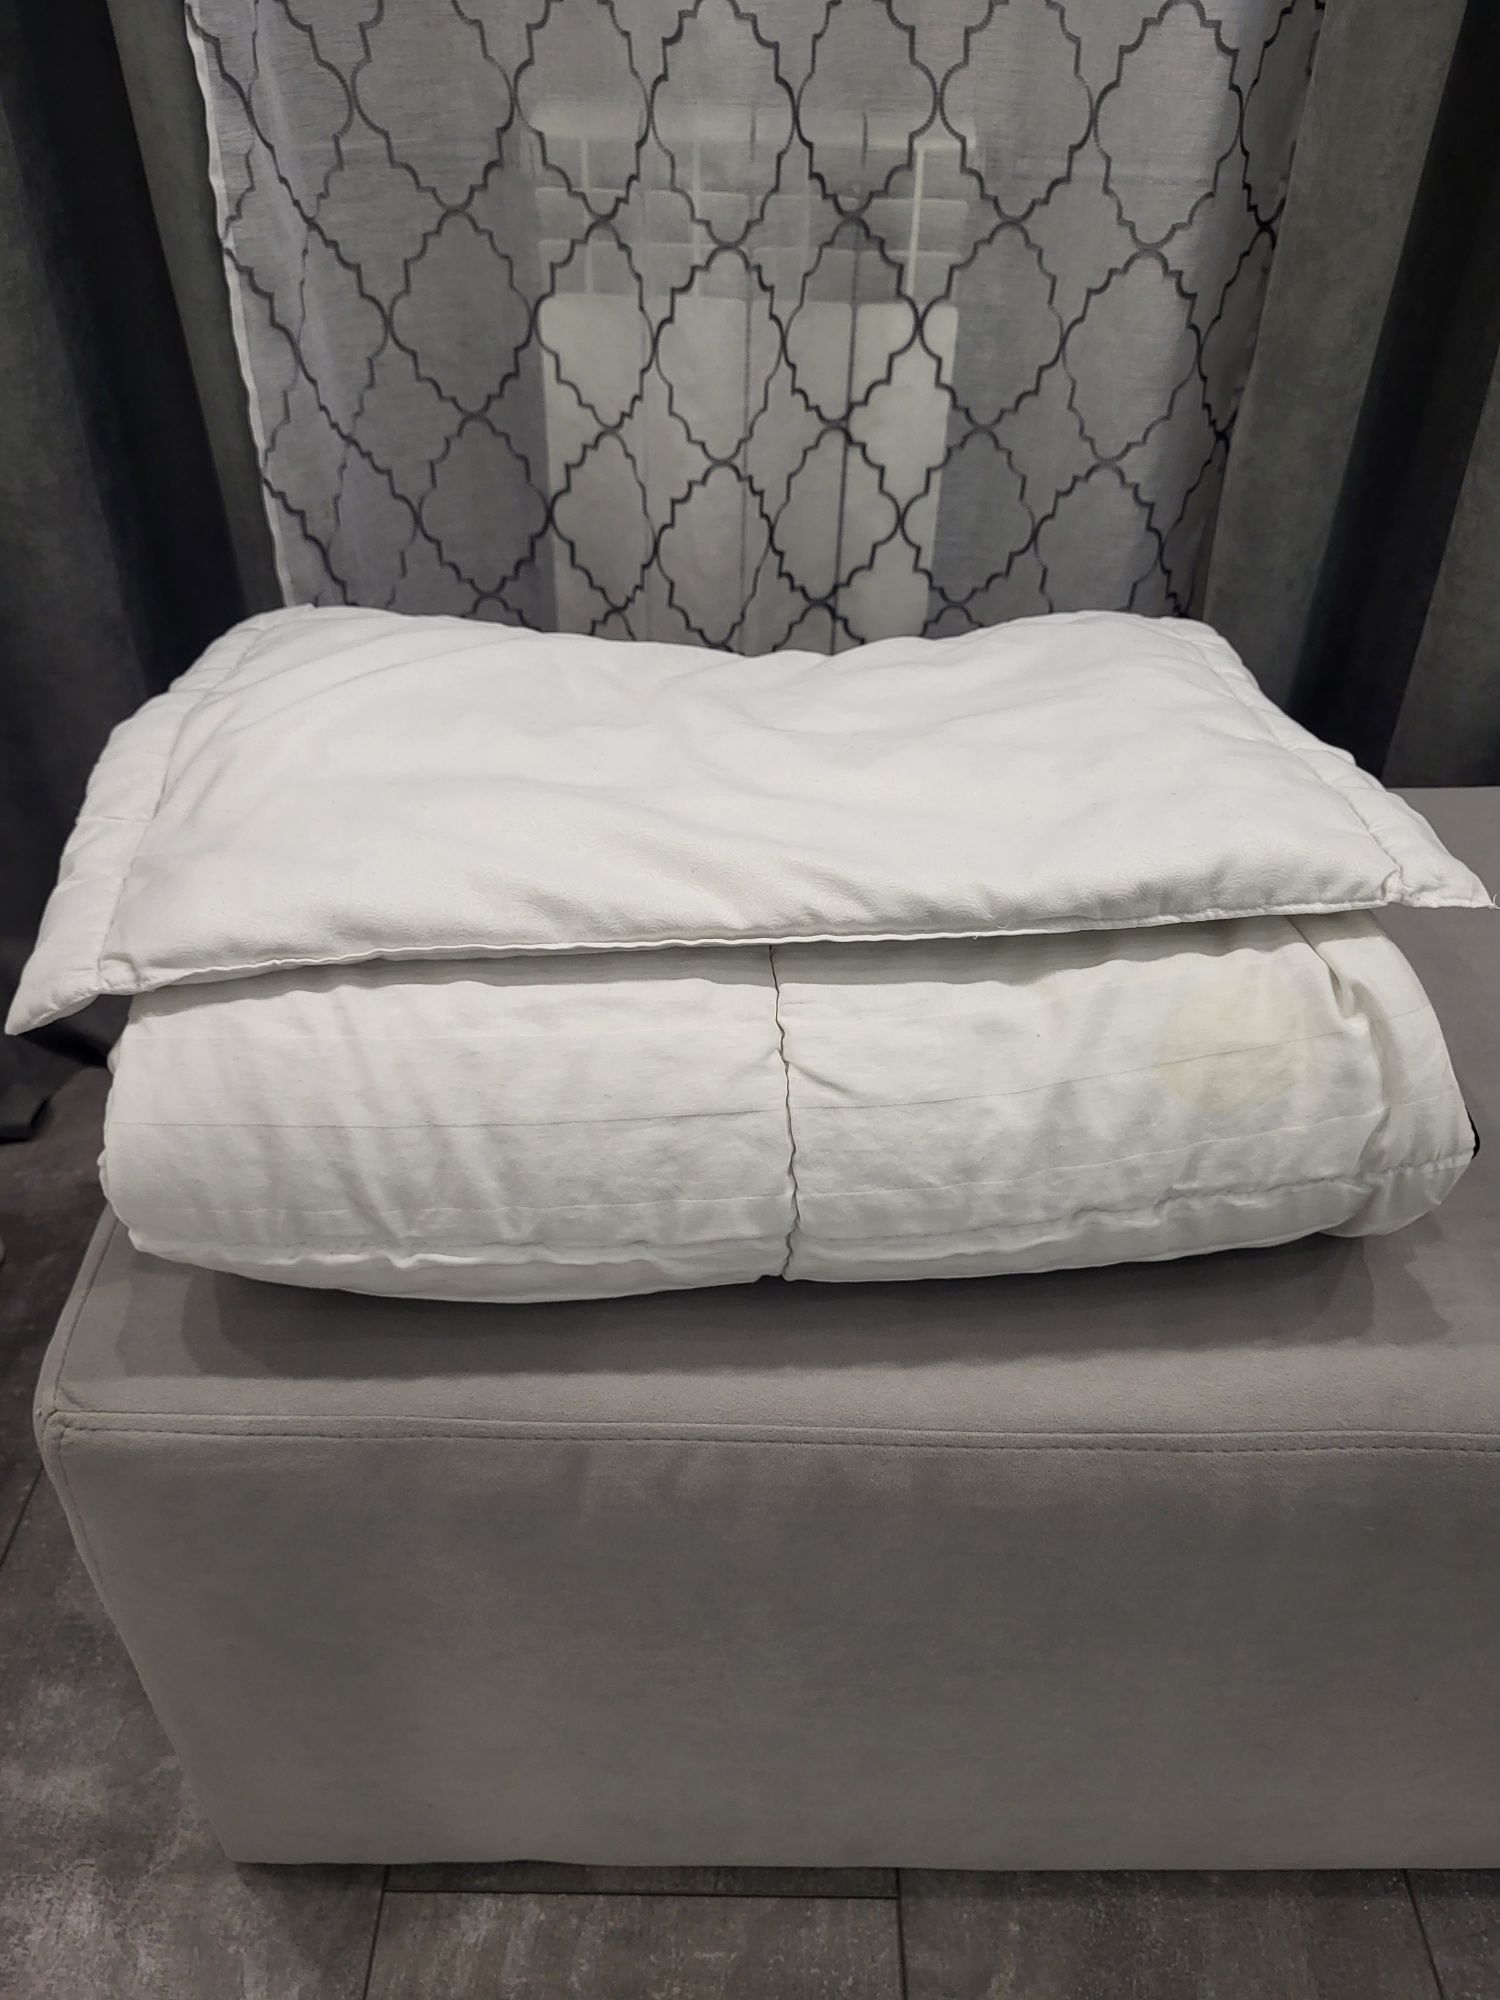 Дитяче ліжко з матрасиком, ковдра, подушка, постільна білизна